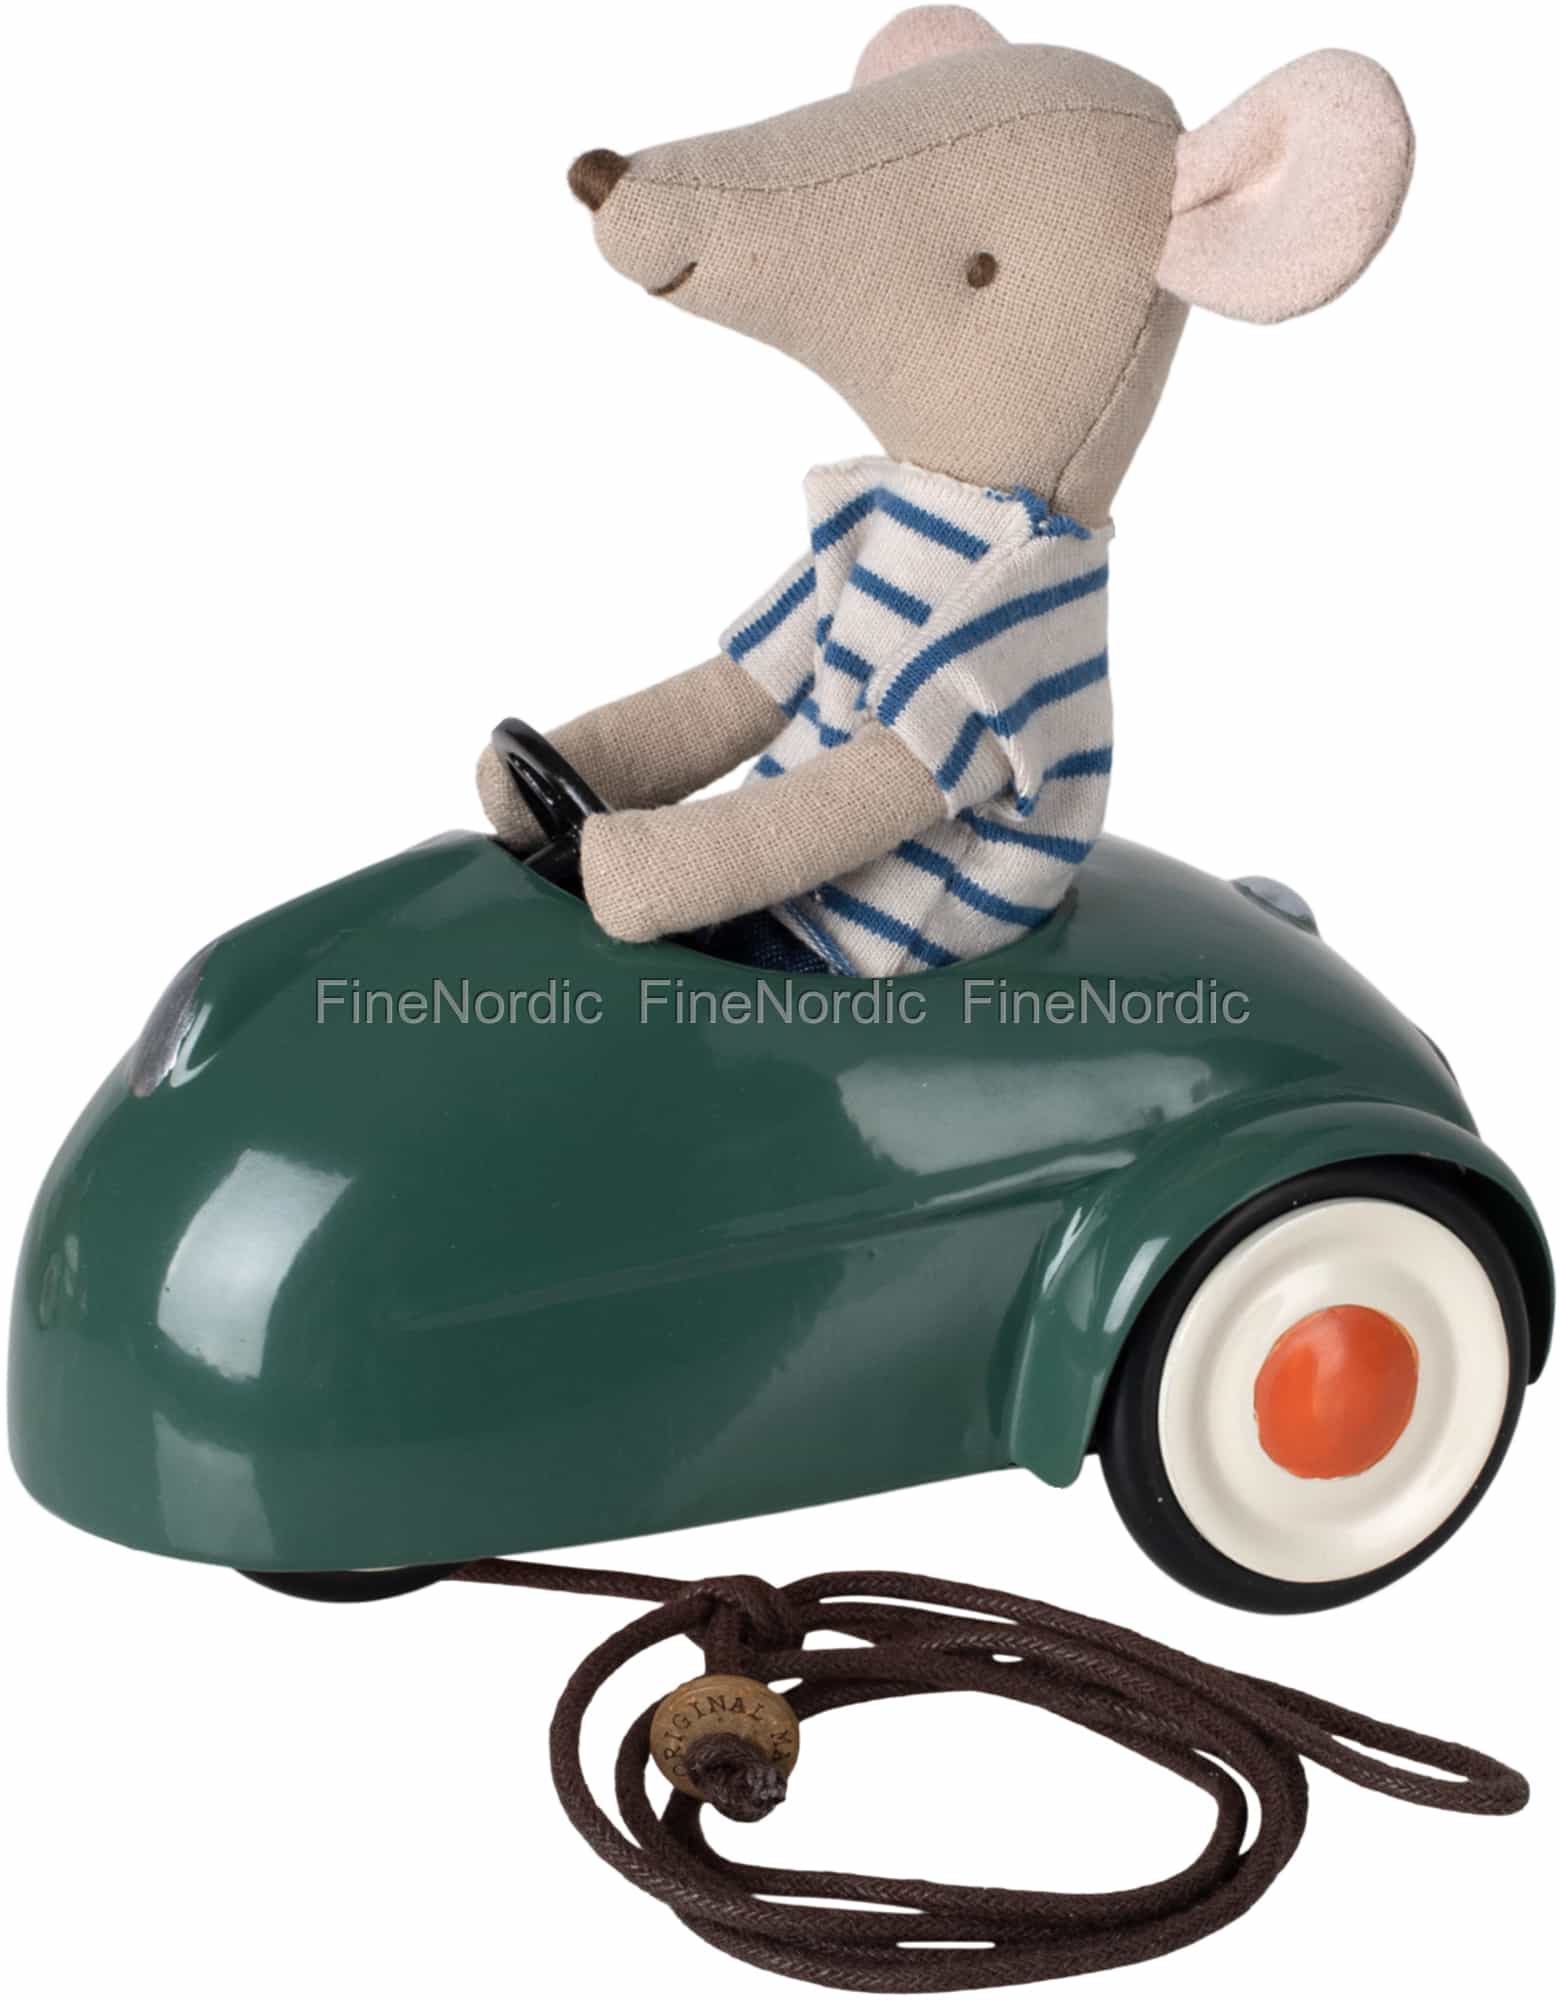 Maileg Auto für Mäuse - Dunkelgrün (ohne Maus)